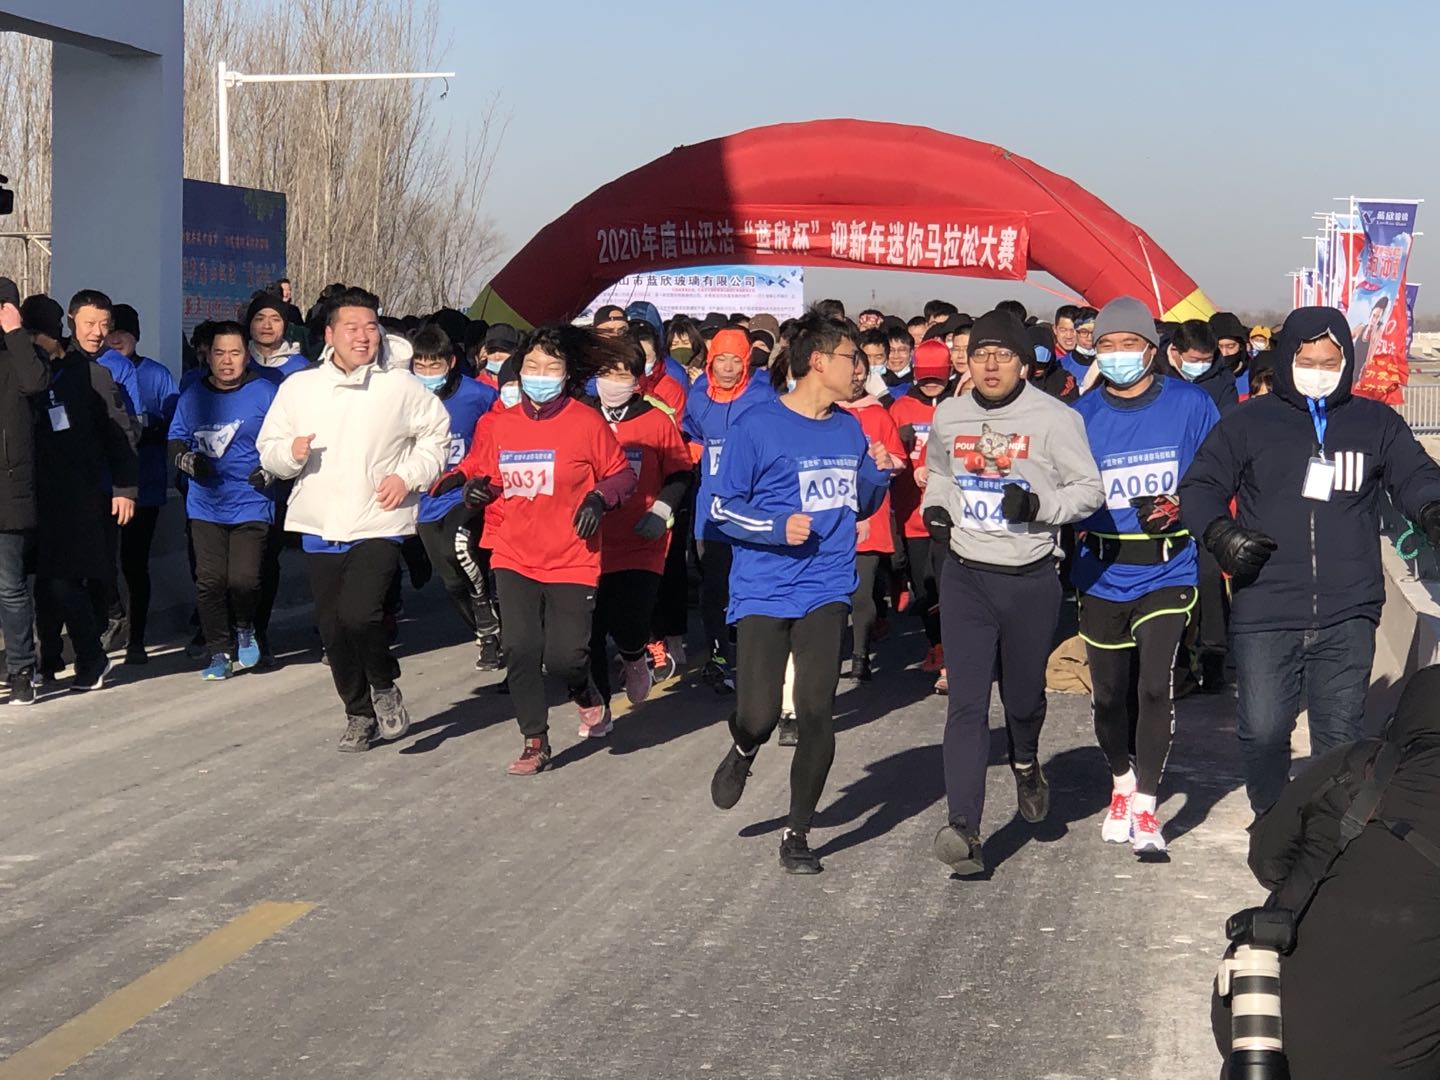 唐山市汉沽管理区举办2020年唐山汉沽“蓝欣杯”迎新年迷你马拉松大赛